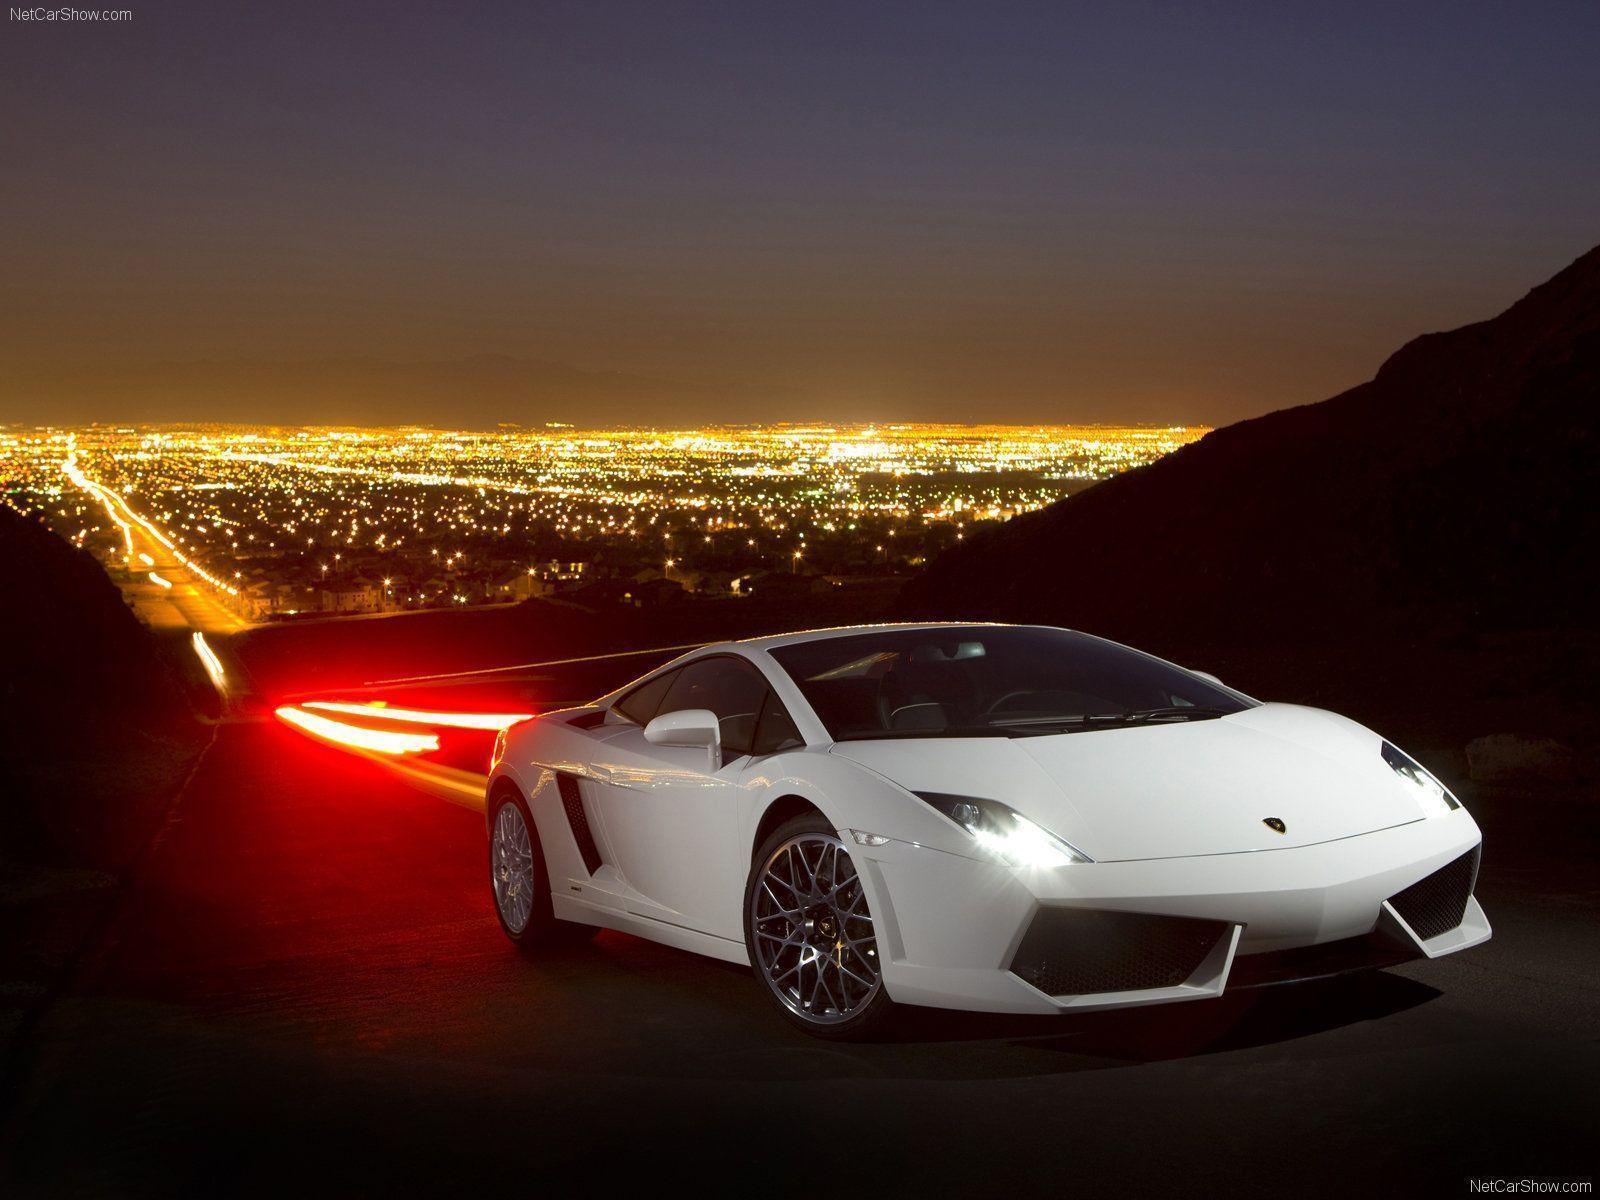 Download Lamborghini Wallpaper In HD For Desktop And Mobile